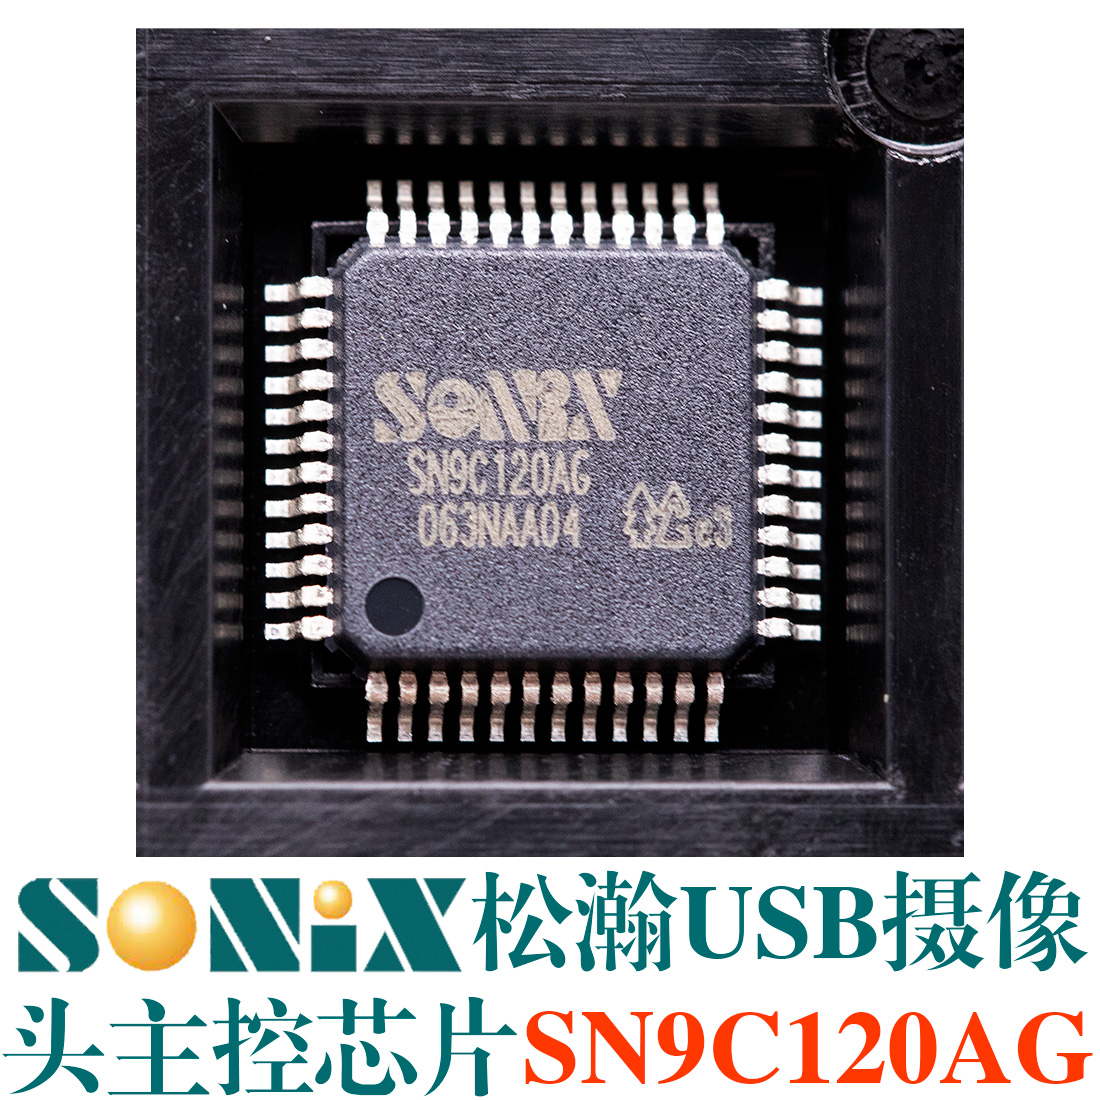 松瀚SN9C120AG， SONIX VGA图像传感器主控，USB 电脑摄像头PC Camera控制器，支持多种VGA sensor的DSP摄像头主控